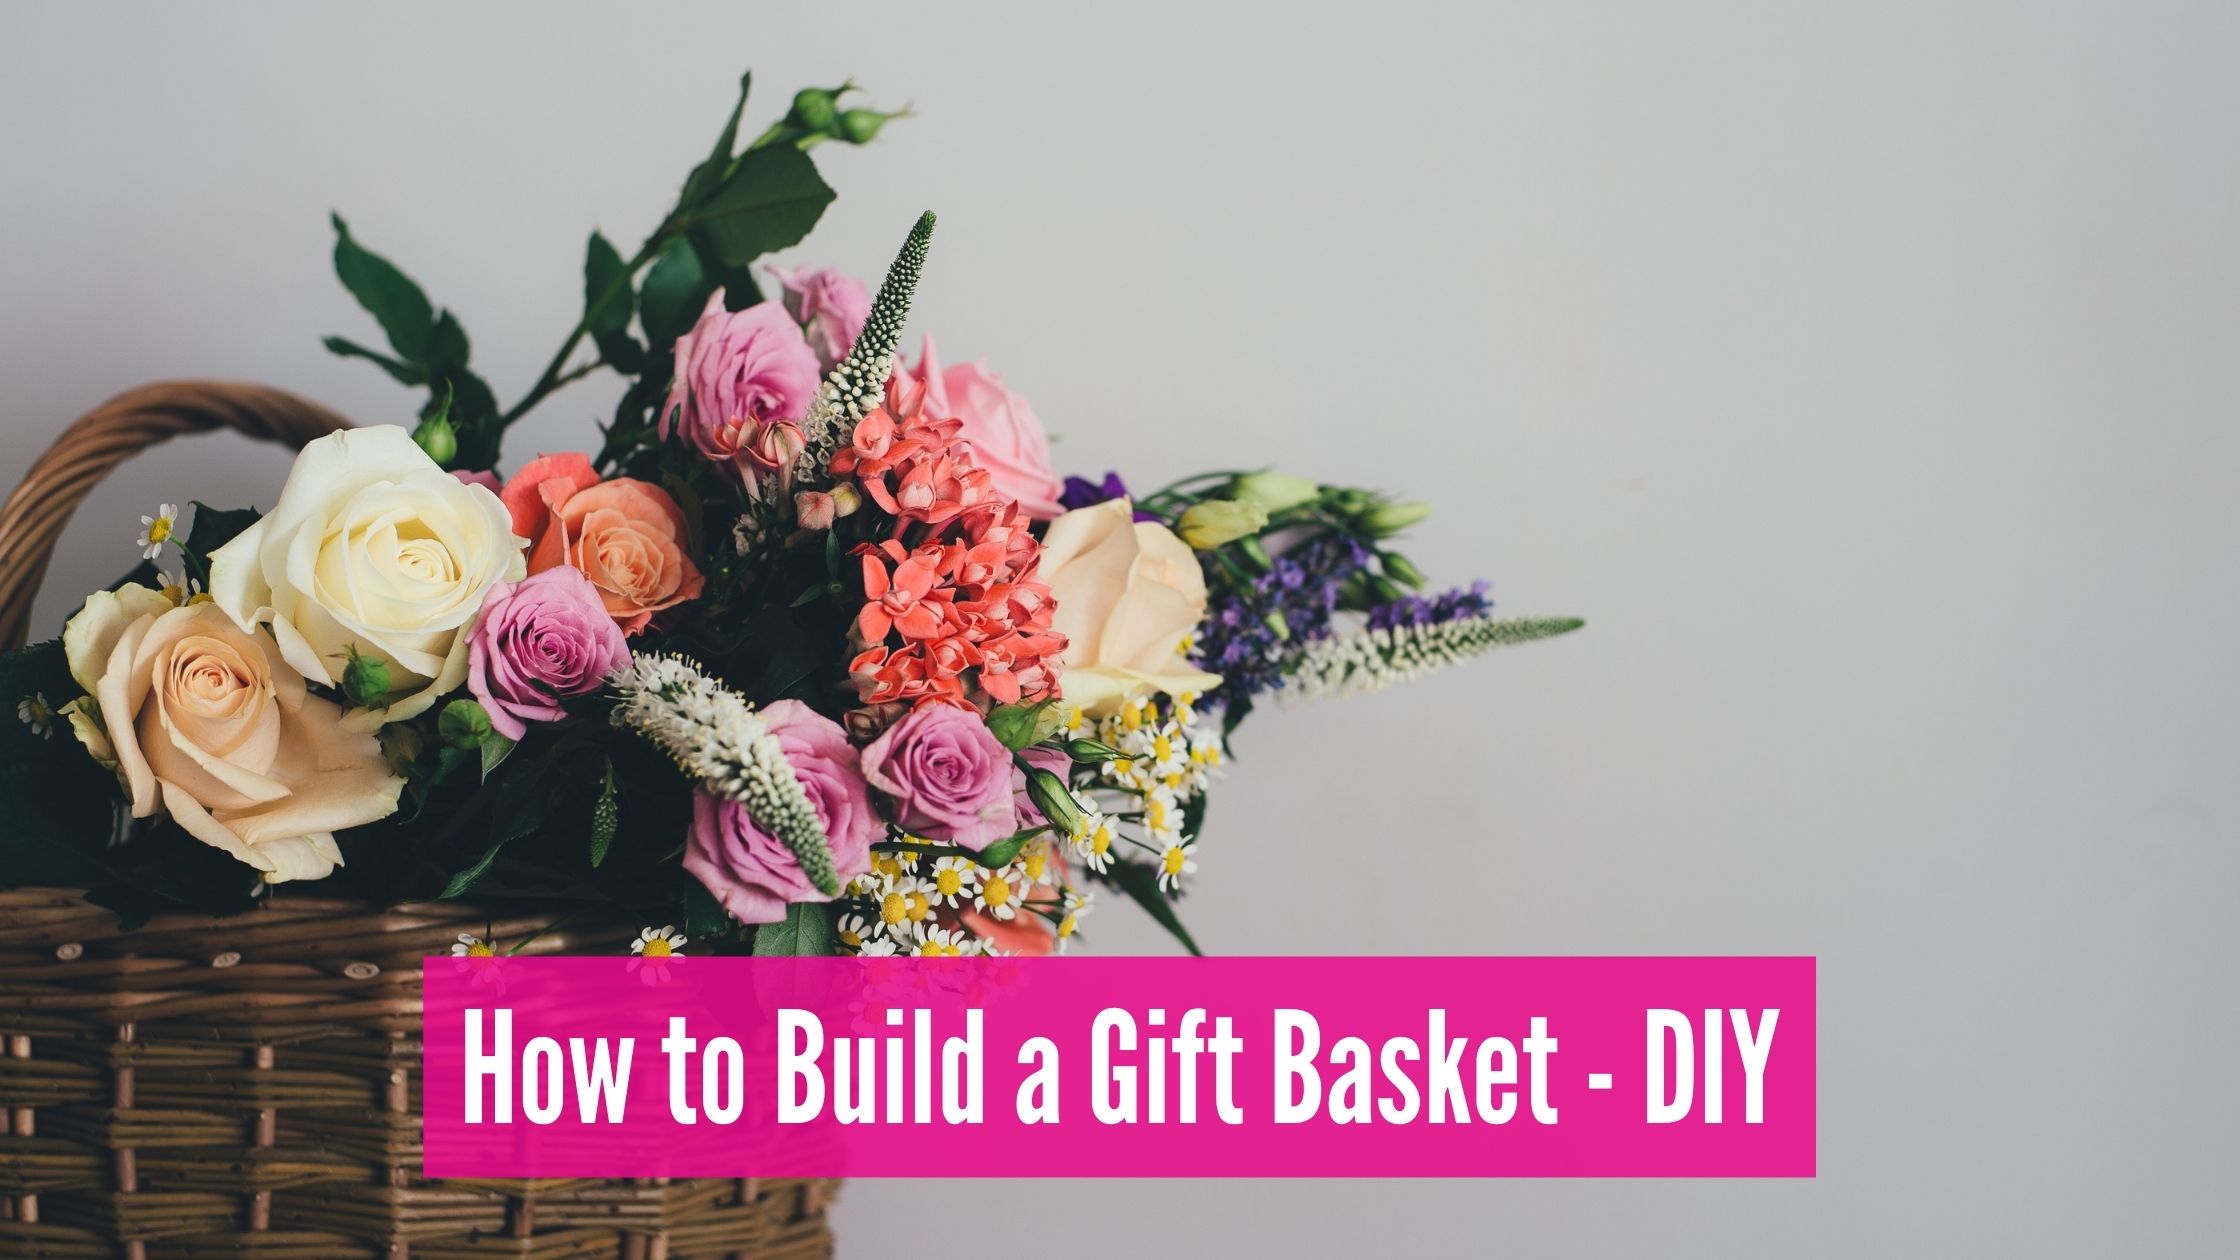 DIY - build gift baskets